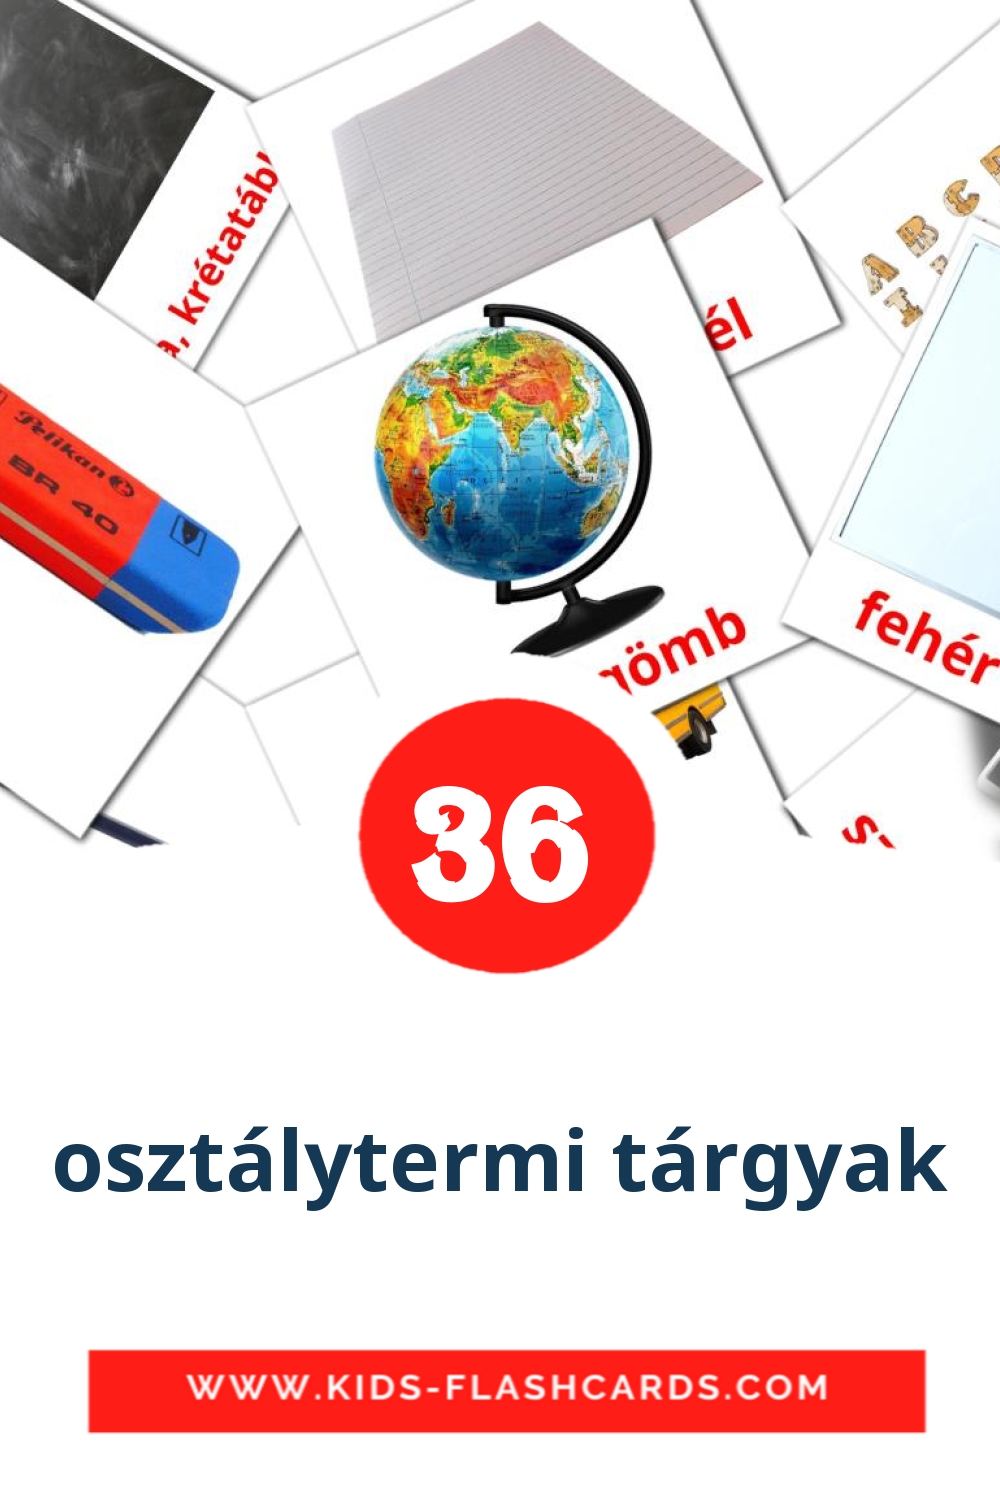 36 tarjetas didacticas de osztálytermi tárgyak para el jardín de infancia en húngaro